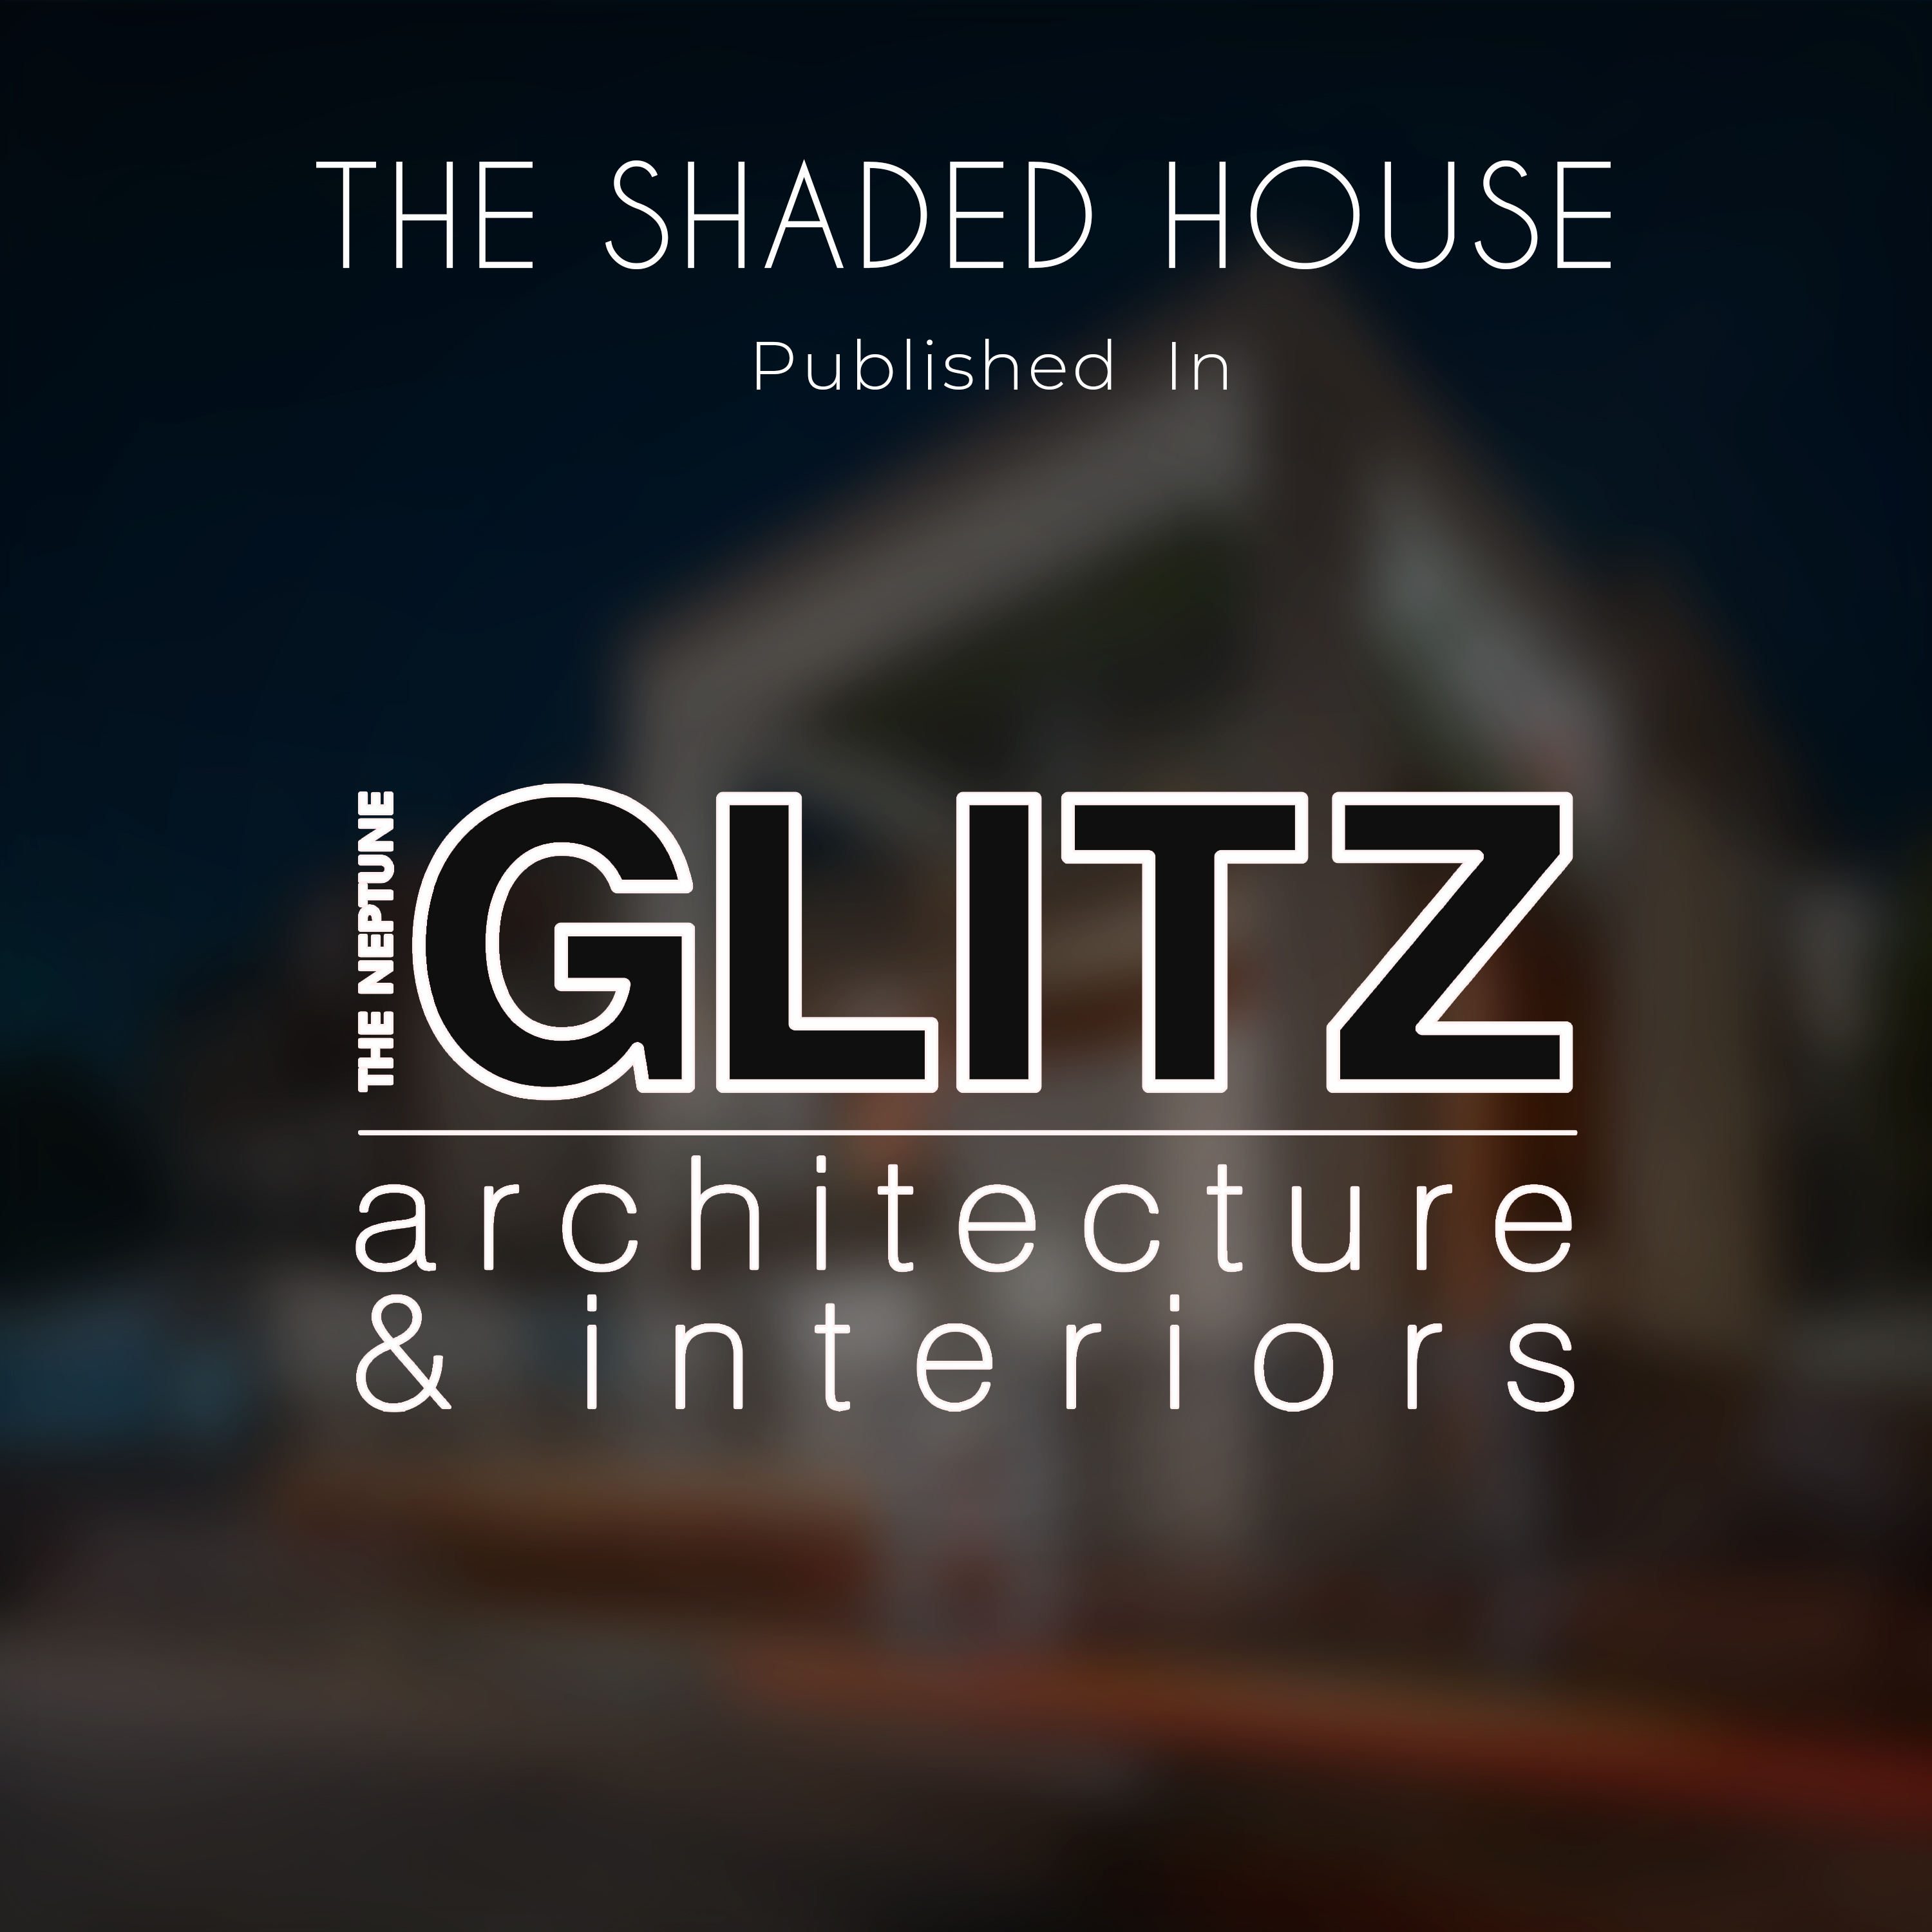 The Neptune Glitz architecture & interior 2021